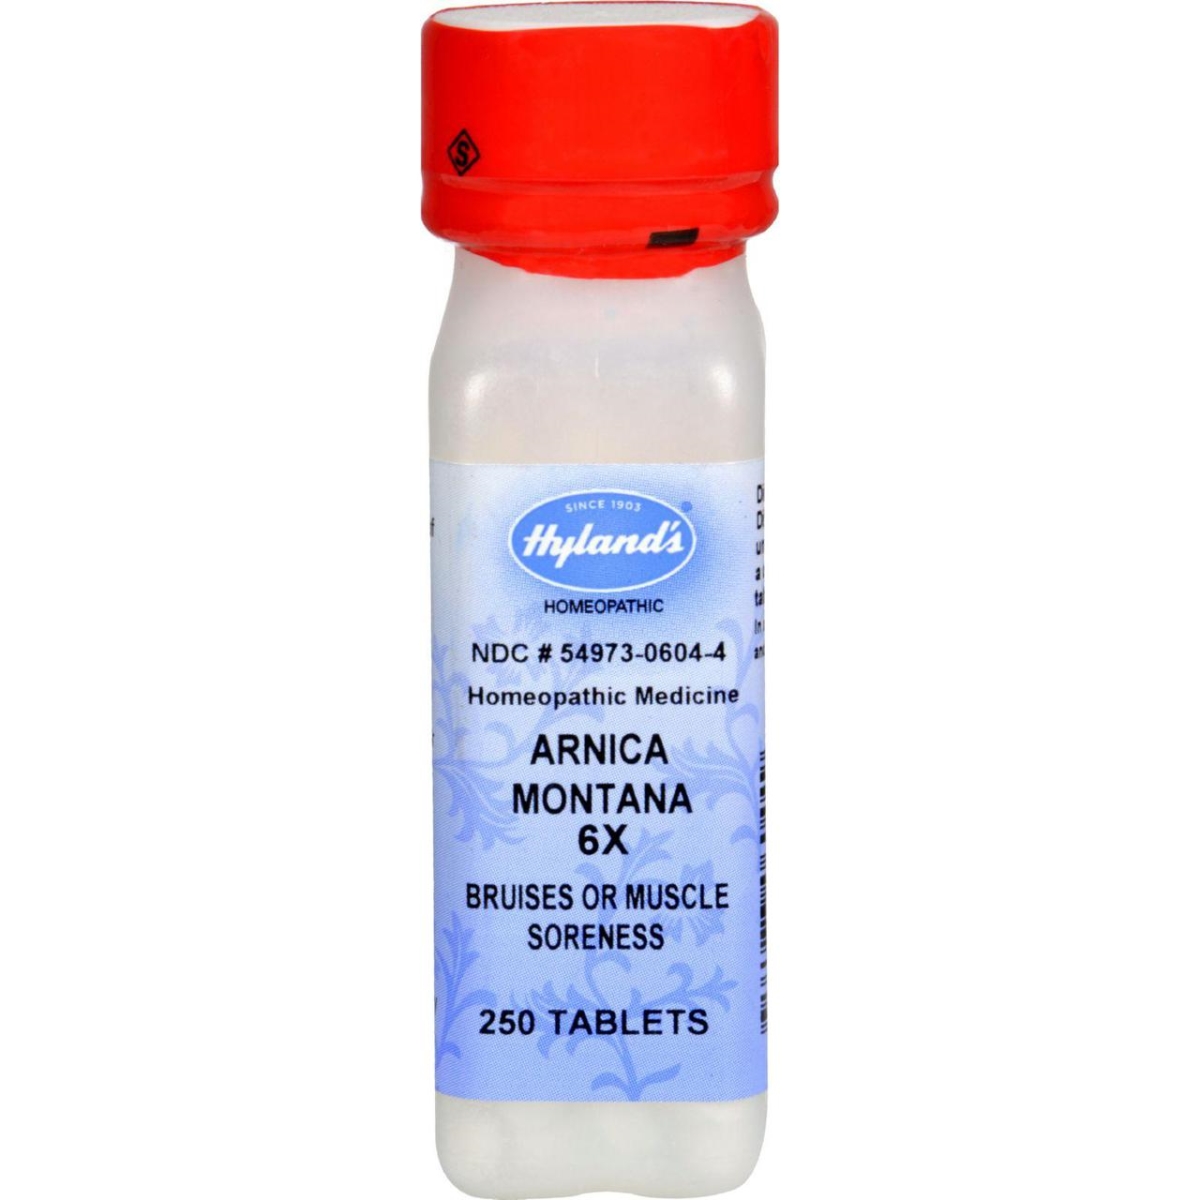 Hg0778563 Arnica Montana 6x - 250 Tablets